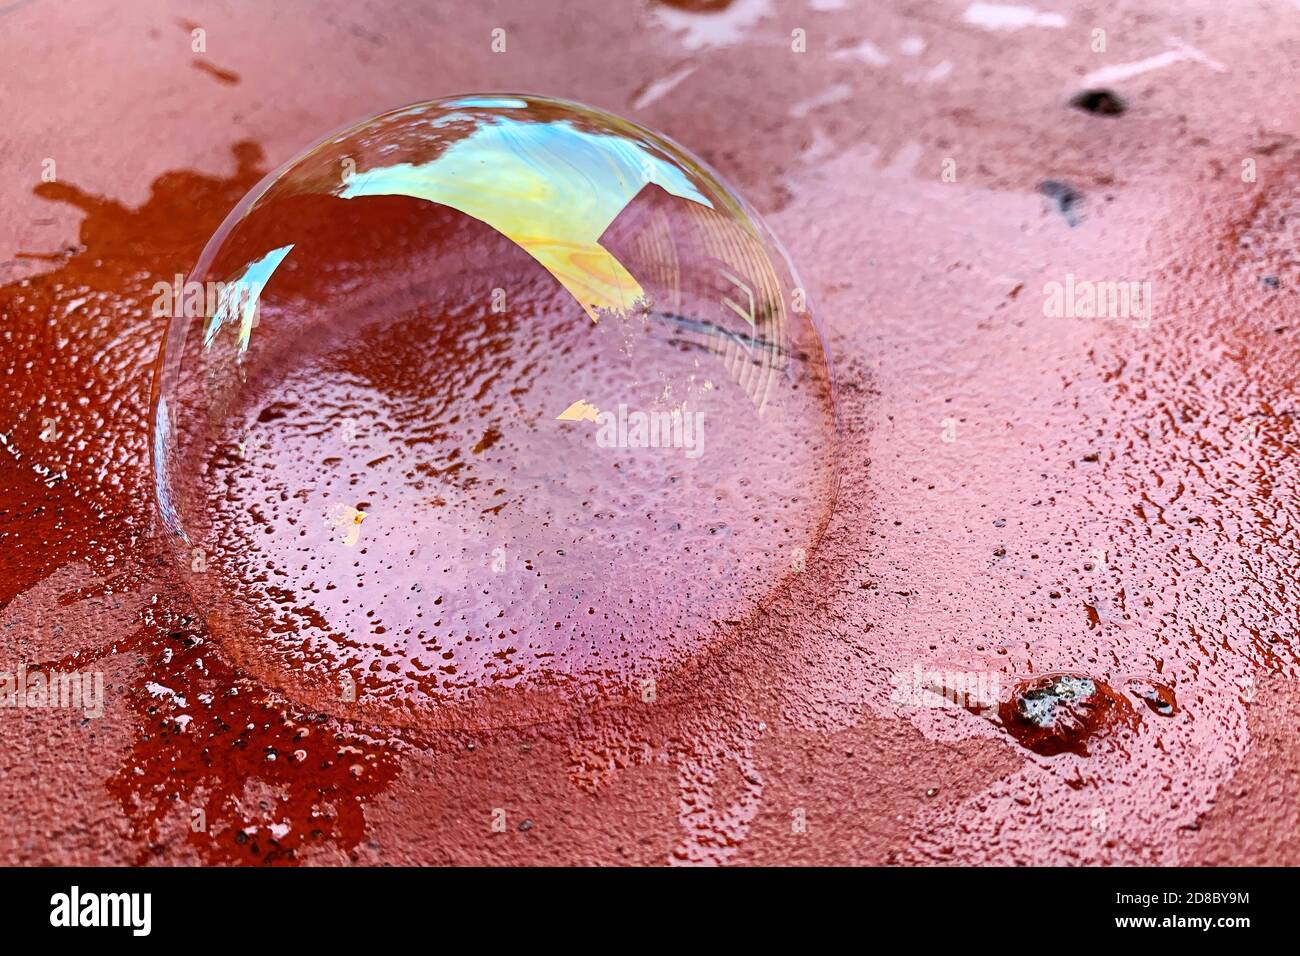 La bolla di sapone si trova su una superficie di mattoni rossi. Superficie trasparente saponata con riflessi e colori arcobaleno Foto Stock